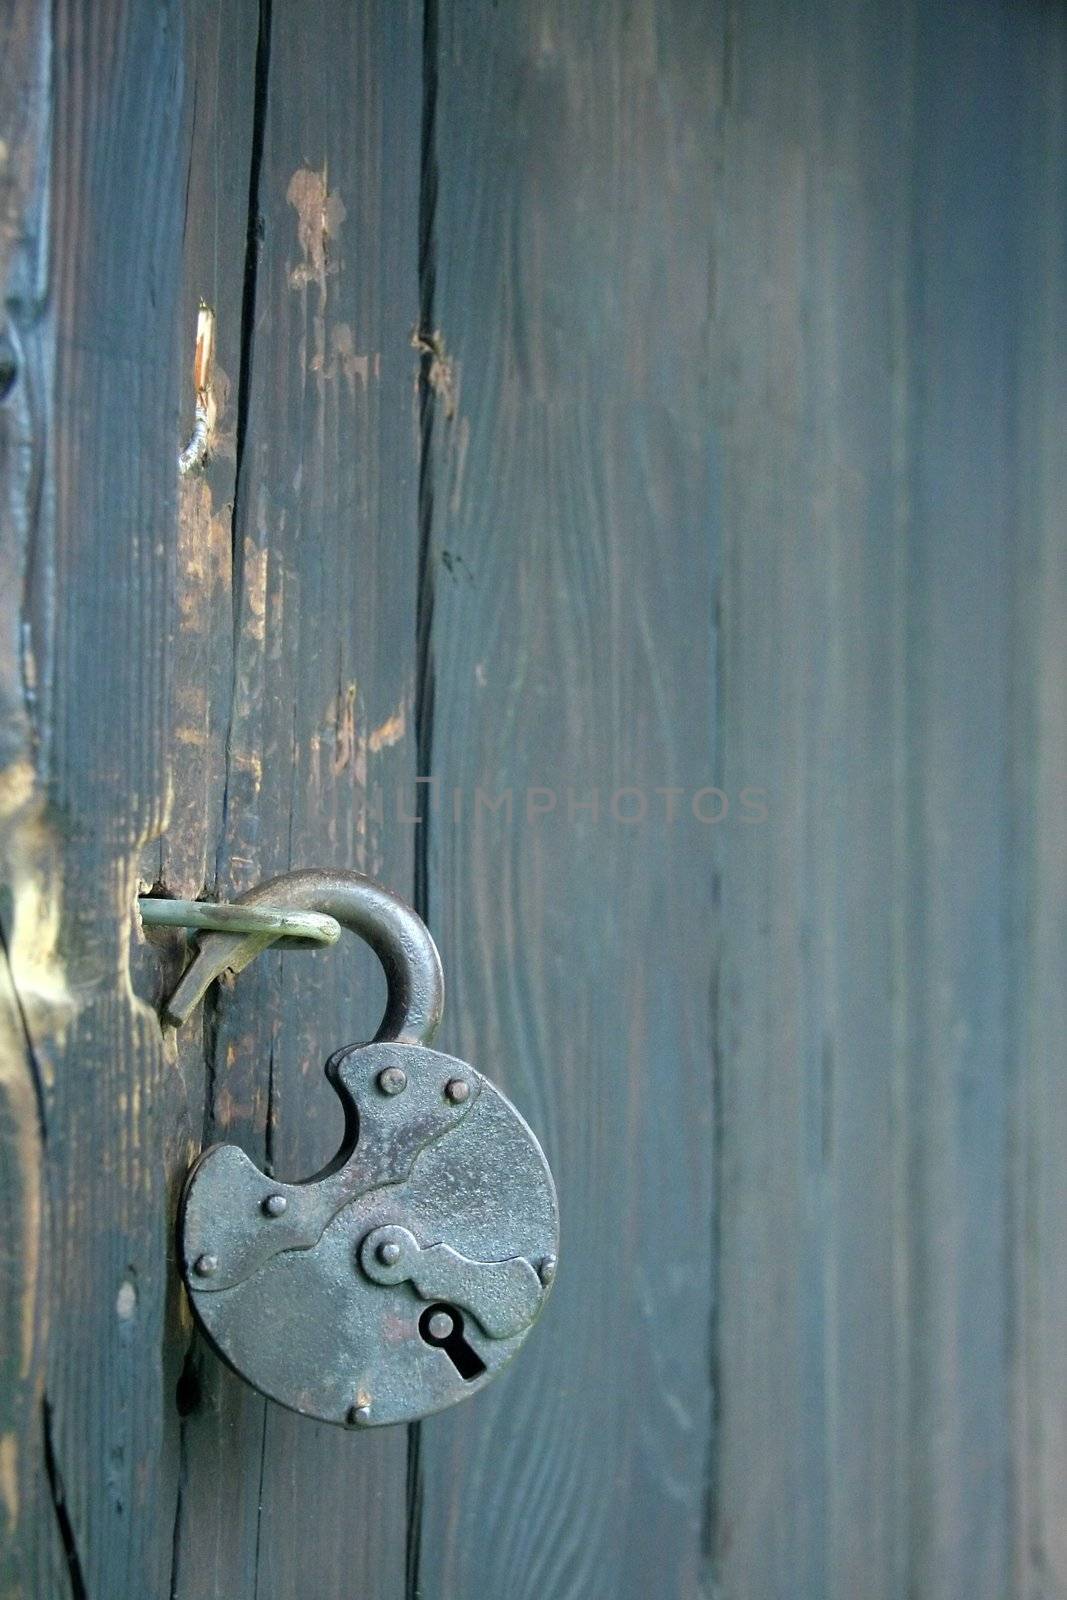 detail photo of an old open lock on wooden door,